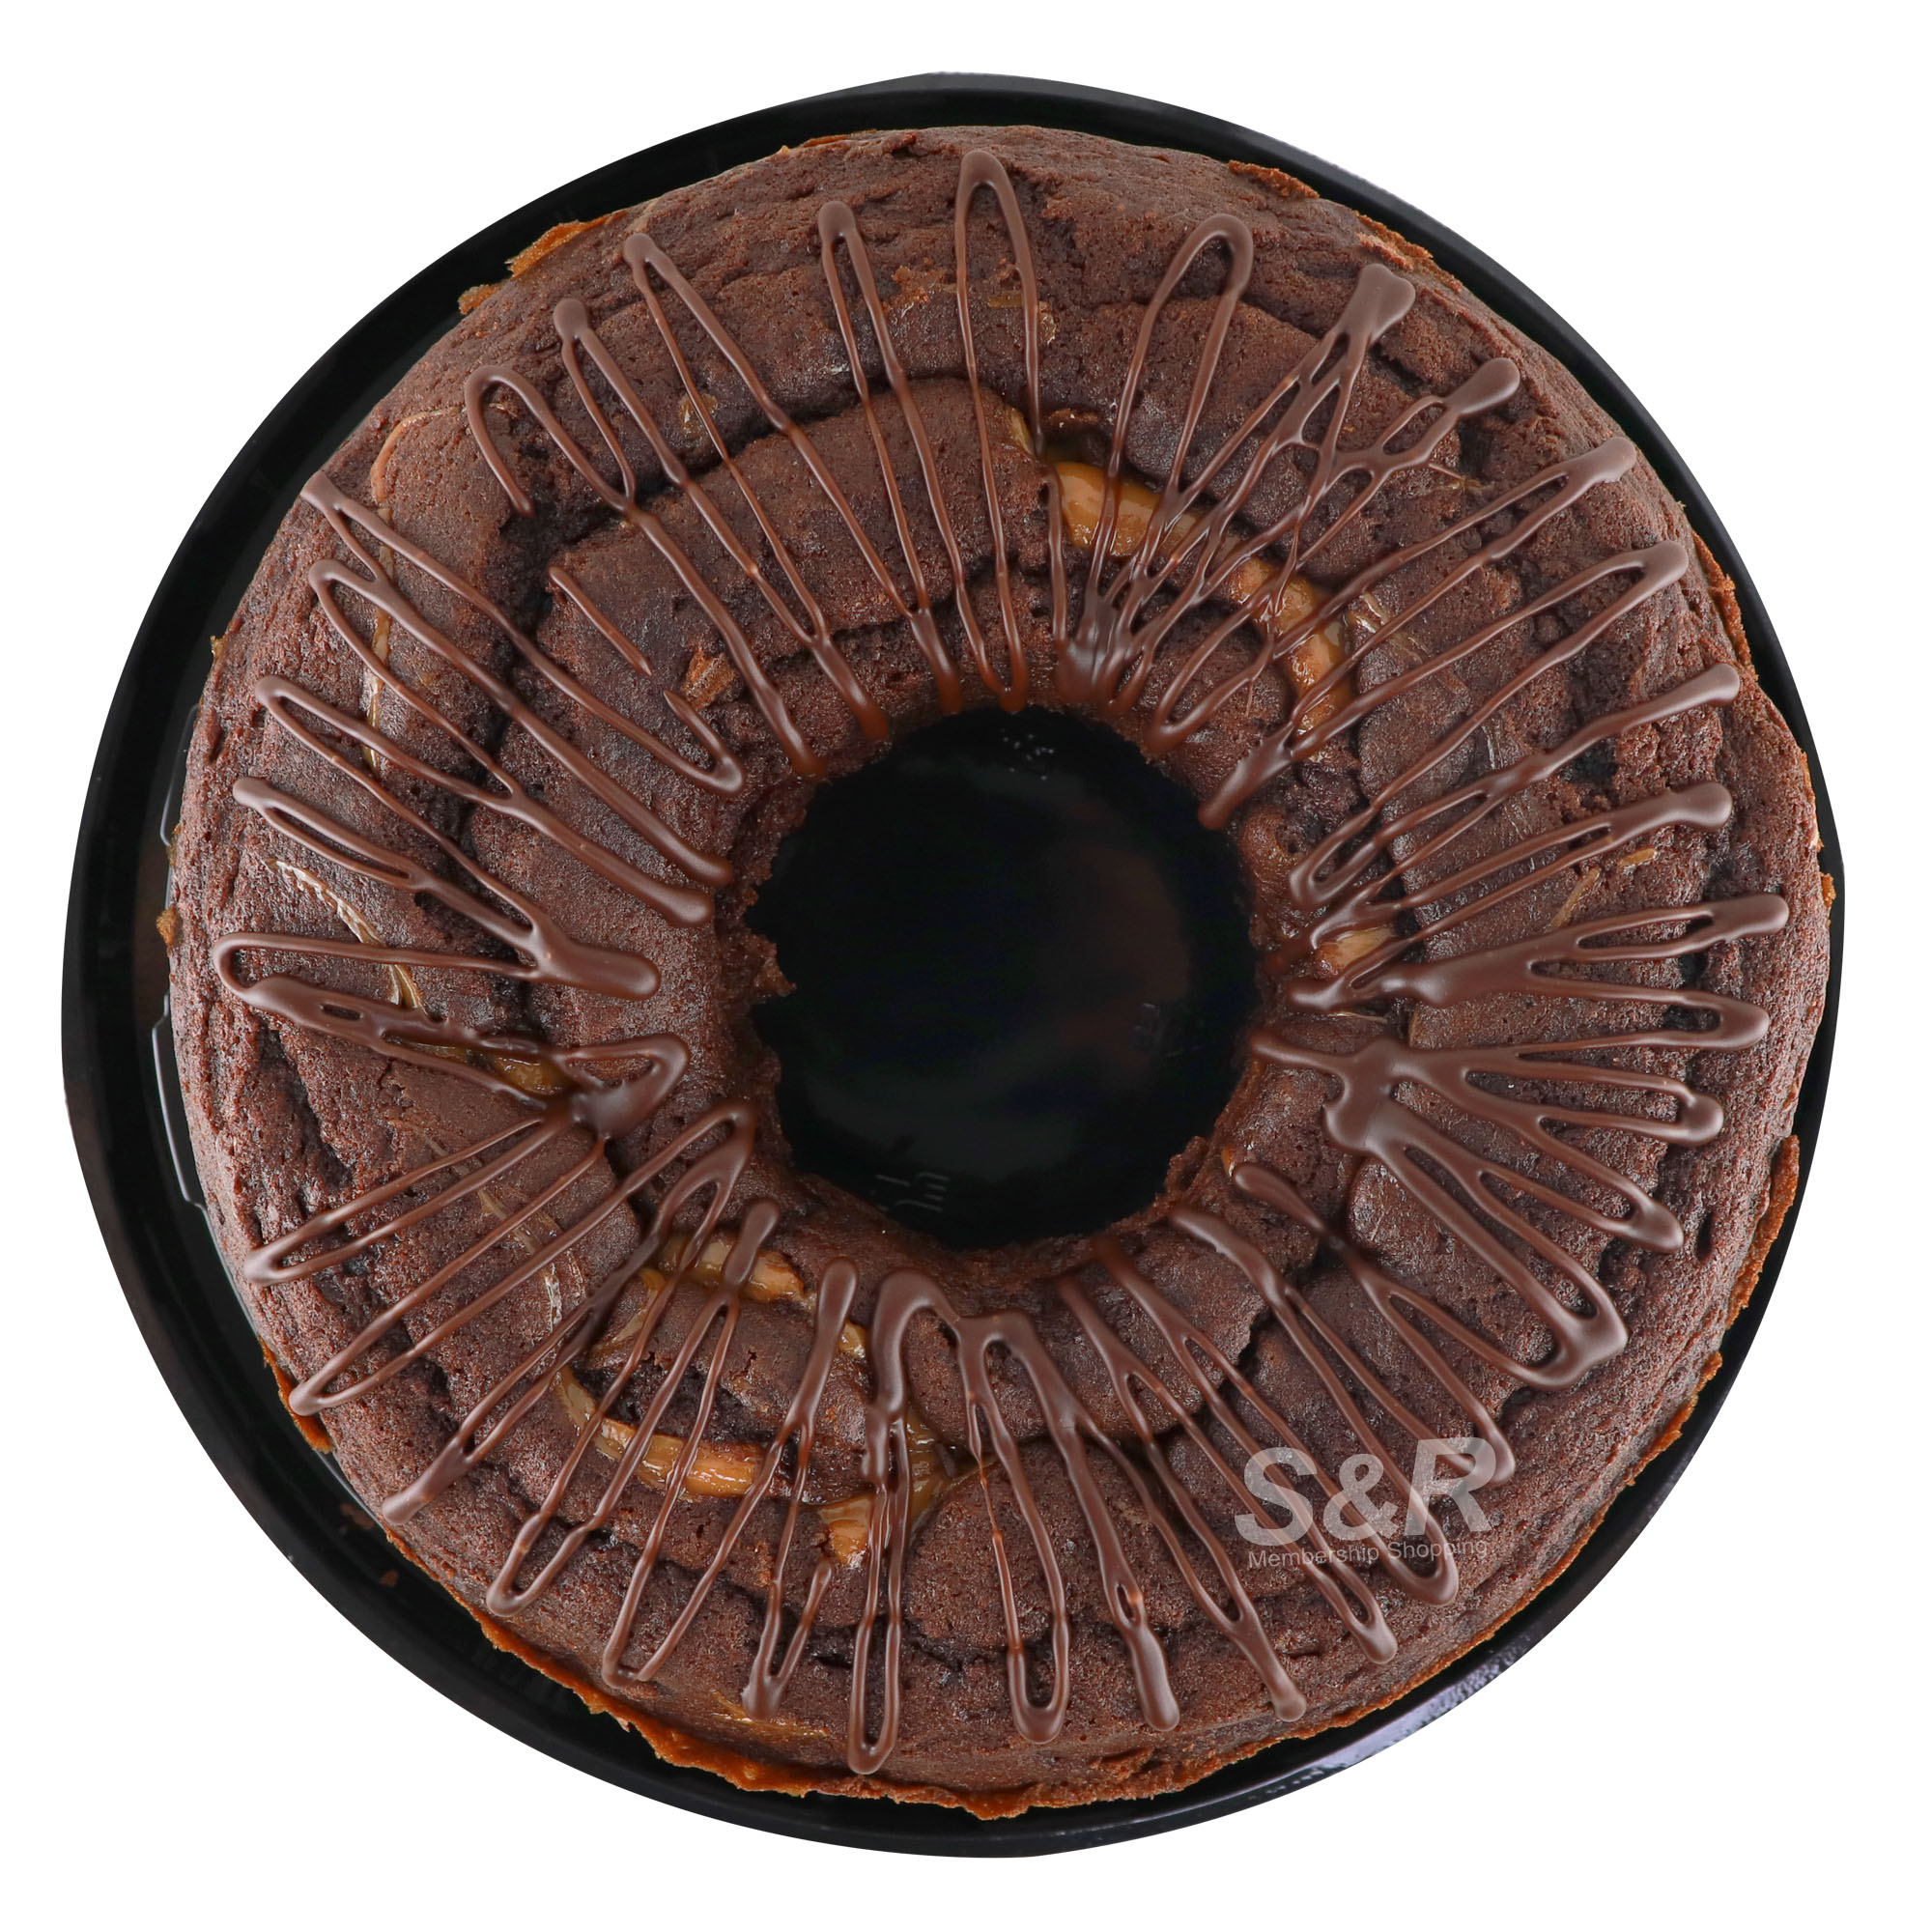 Chocolate Caramel Ring Cake